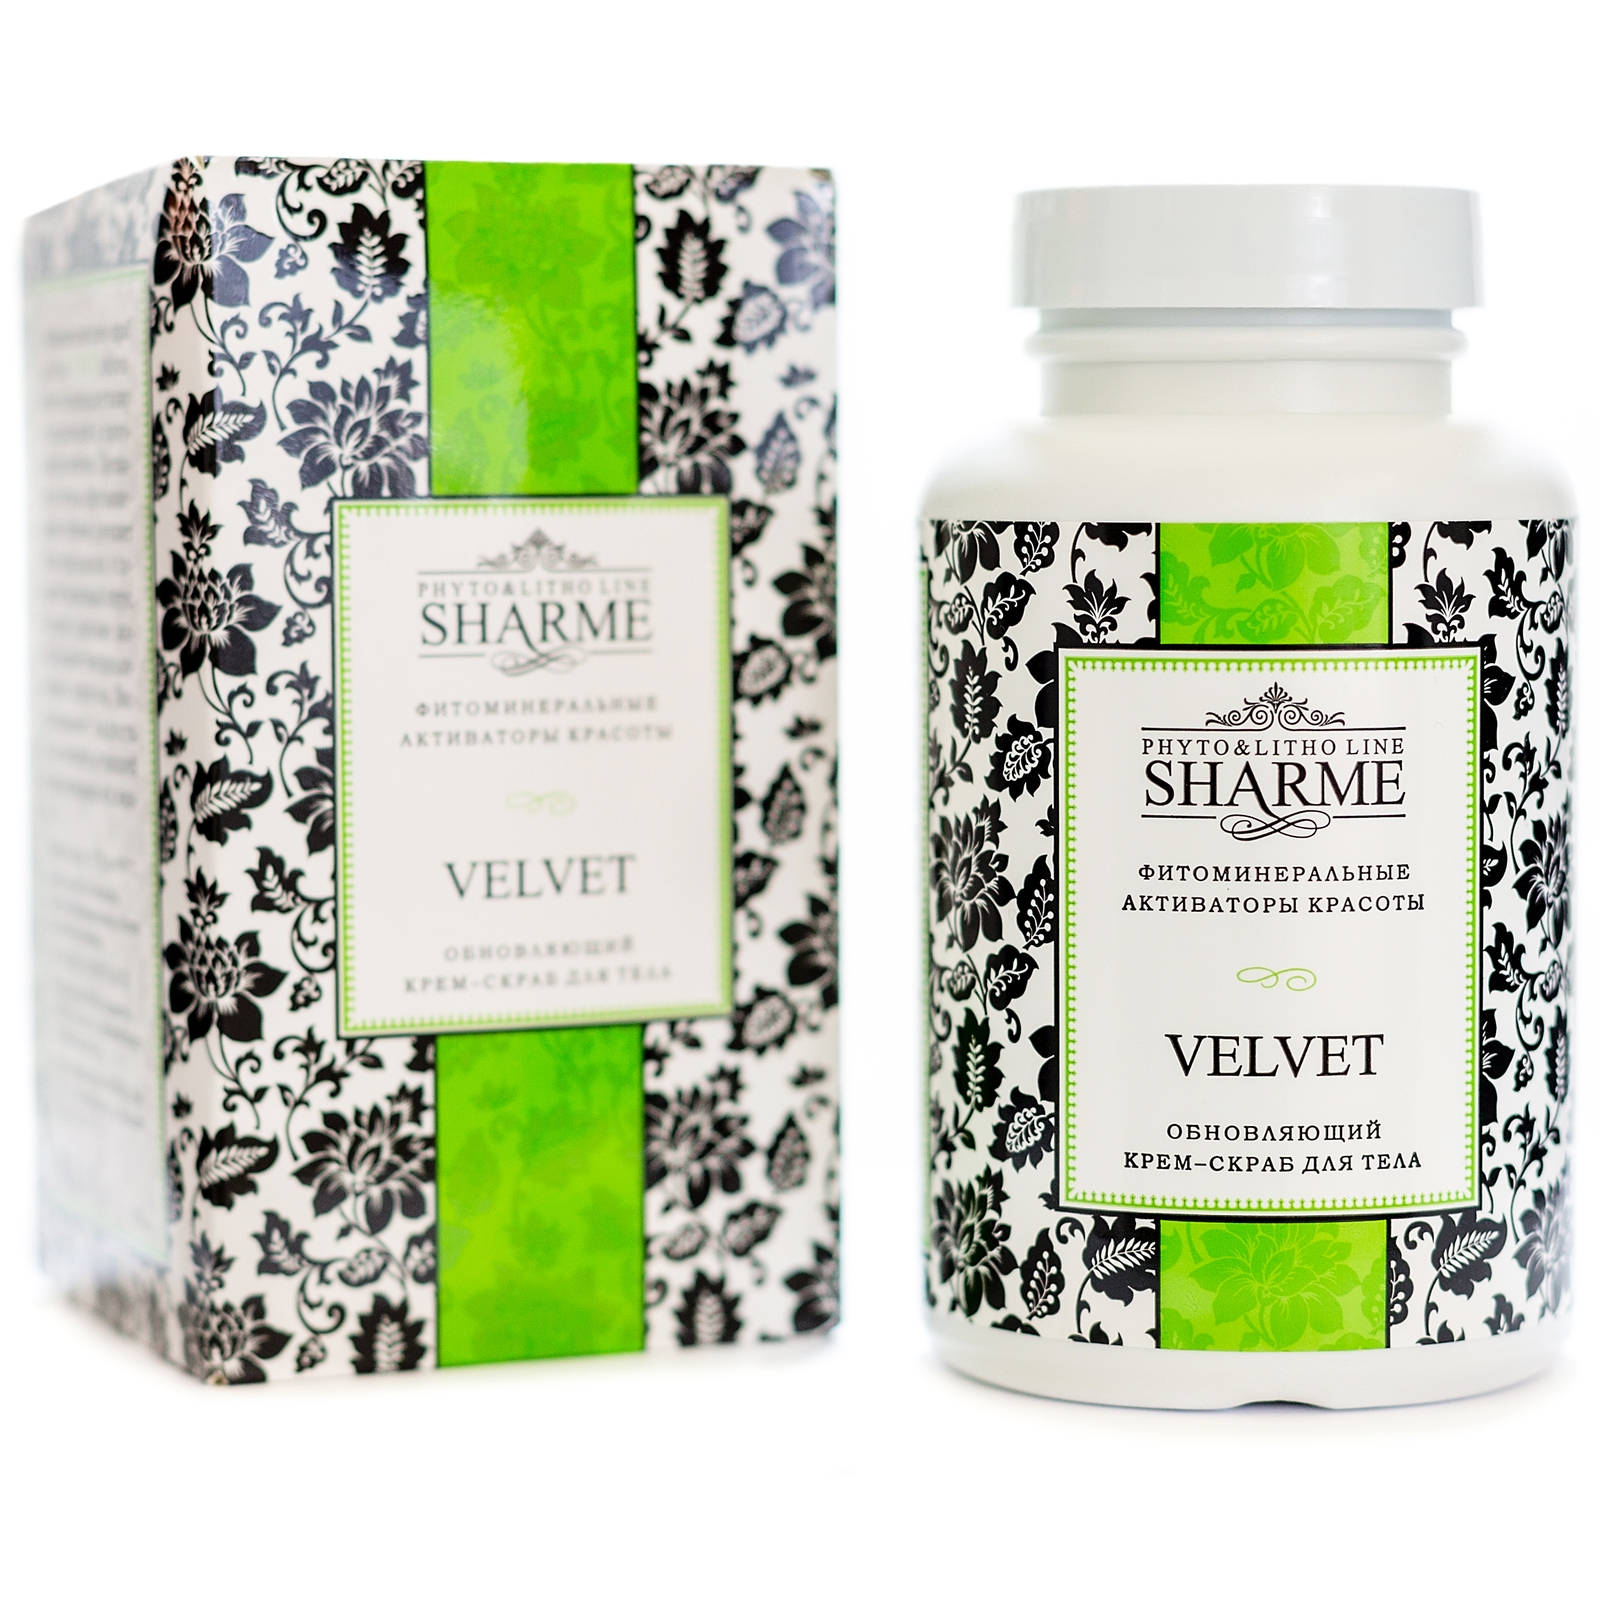 Sharme Velvet. Обновляющий крем-скраб для тела, 250 мл 